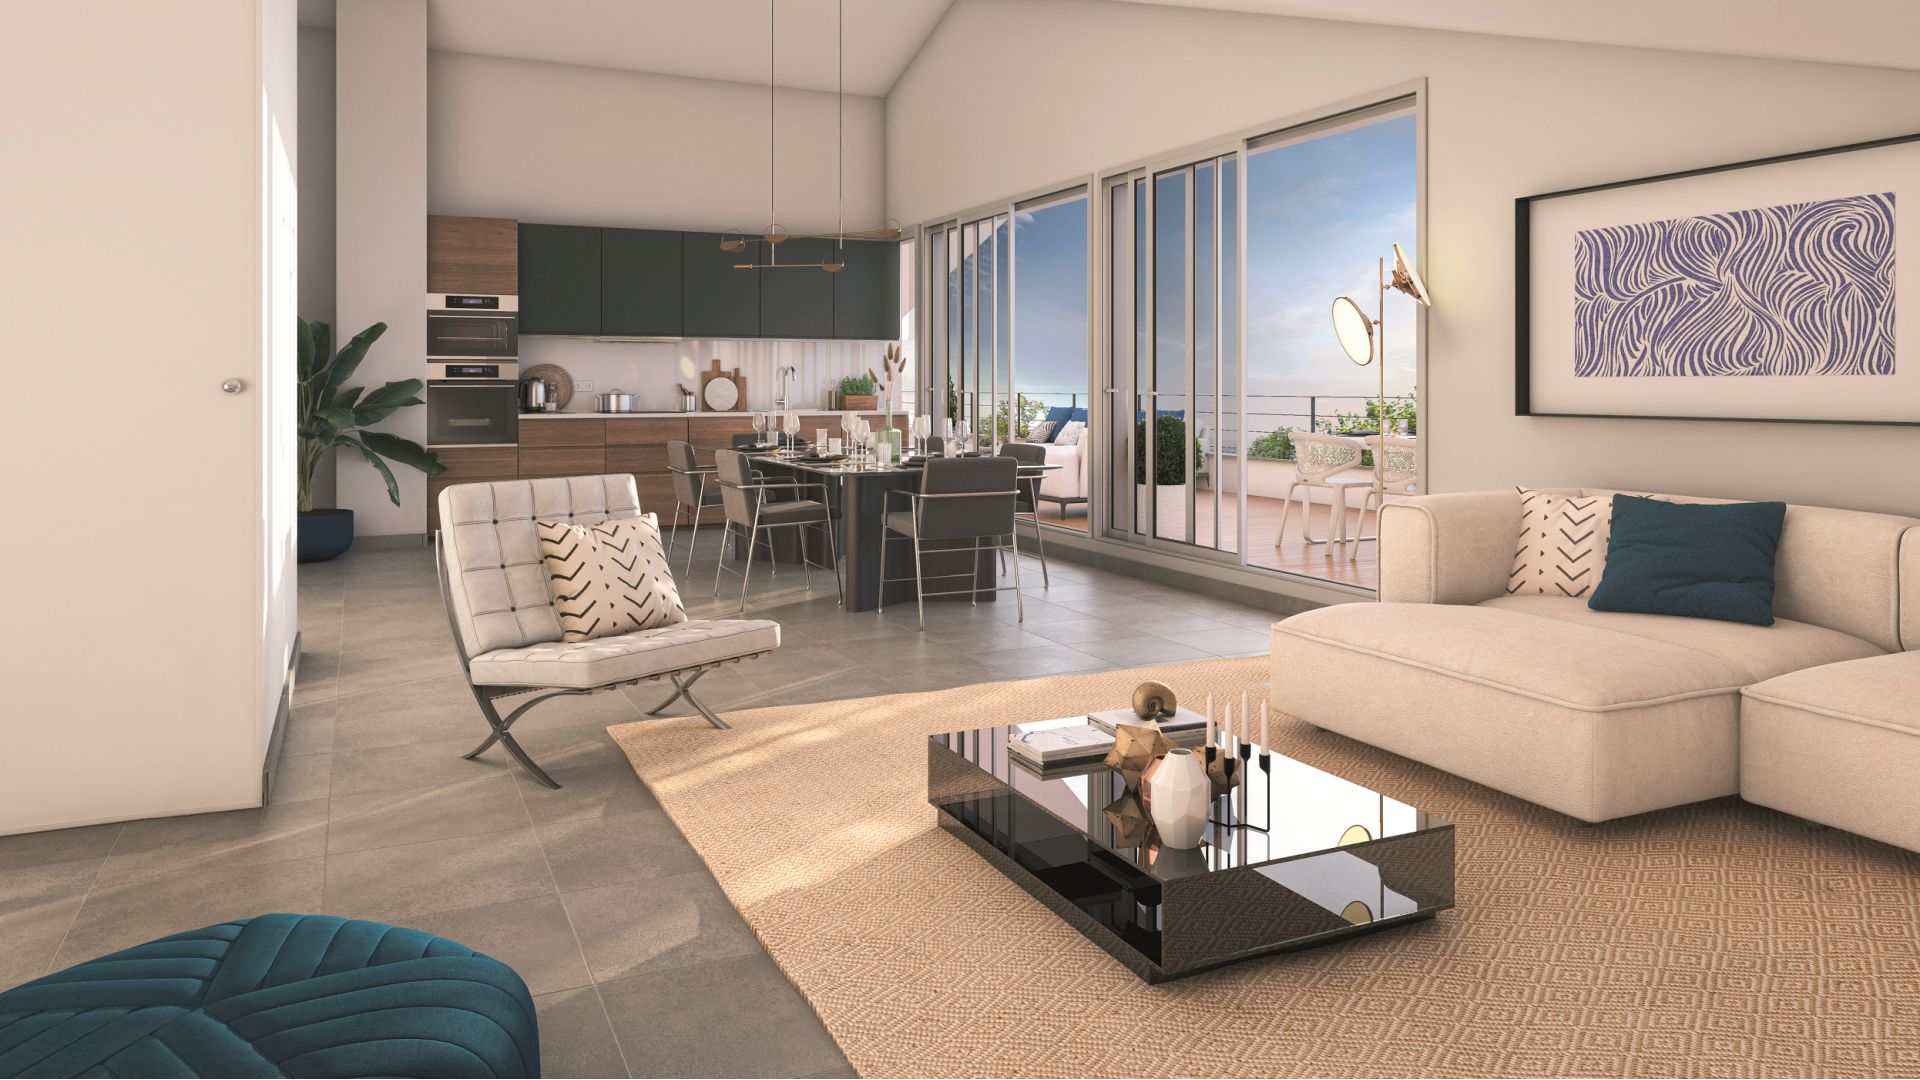 Greencity immobilier - achat appartements neufs du T2 au T5 - Résidence Les Terrasses de Piquessary - Boucau 64340   - vue intérieure